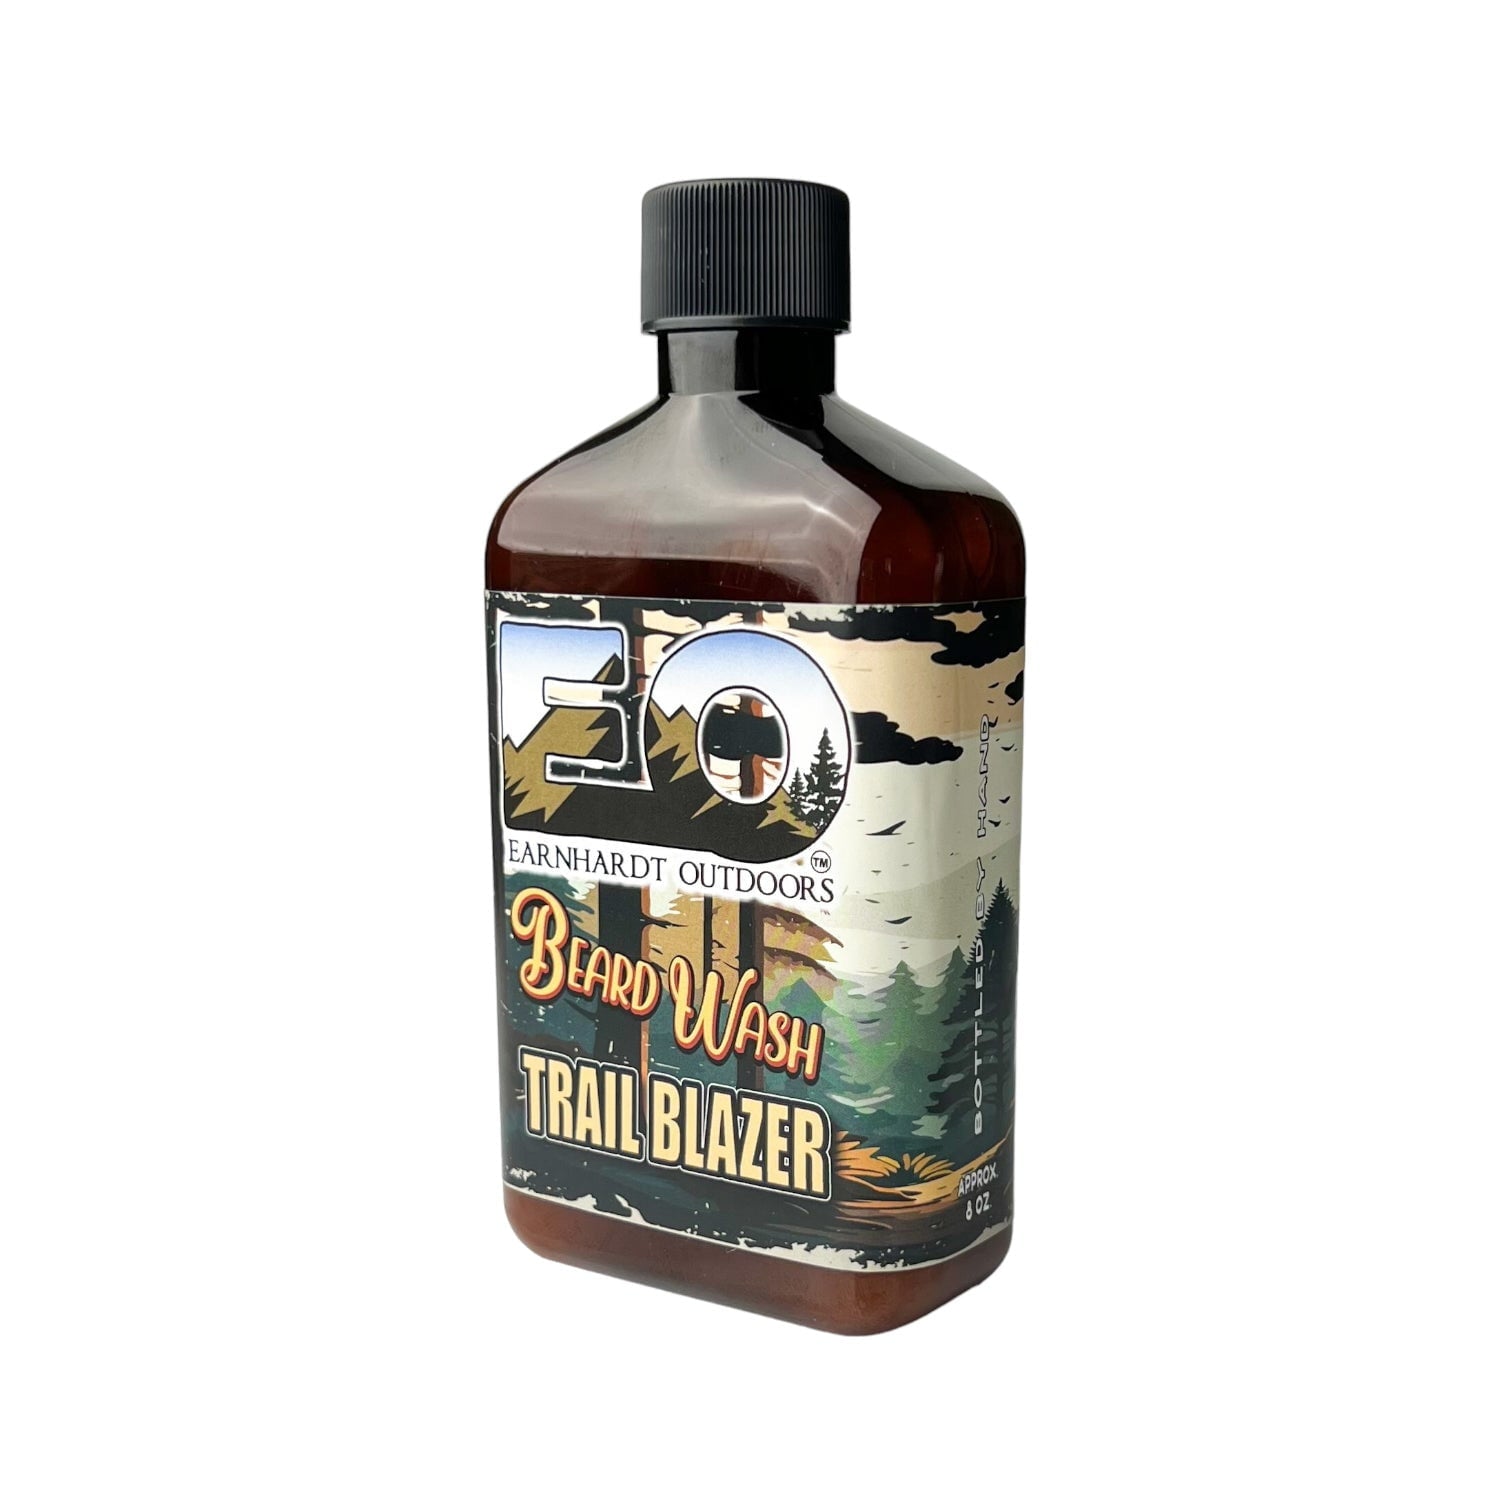 Trail Blazer Earnhardt Outdoors Beard Wash - Old Town Soap Co.